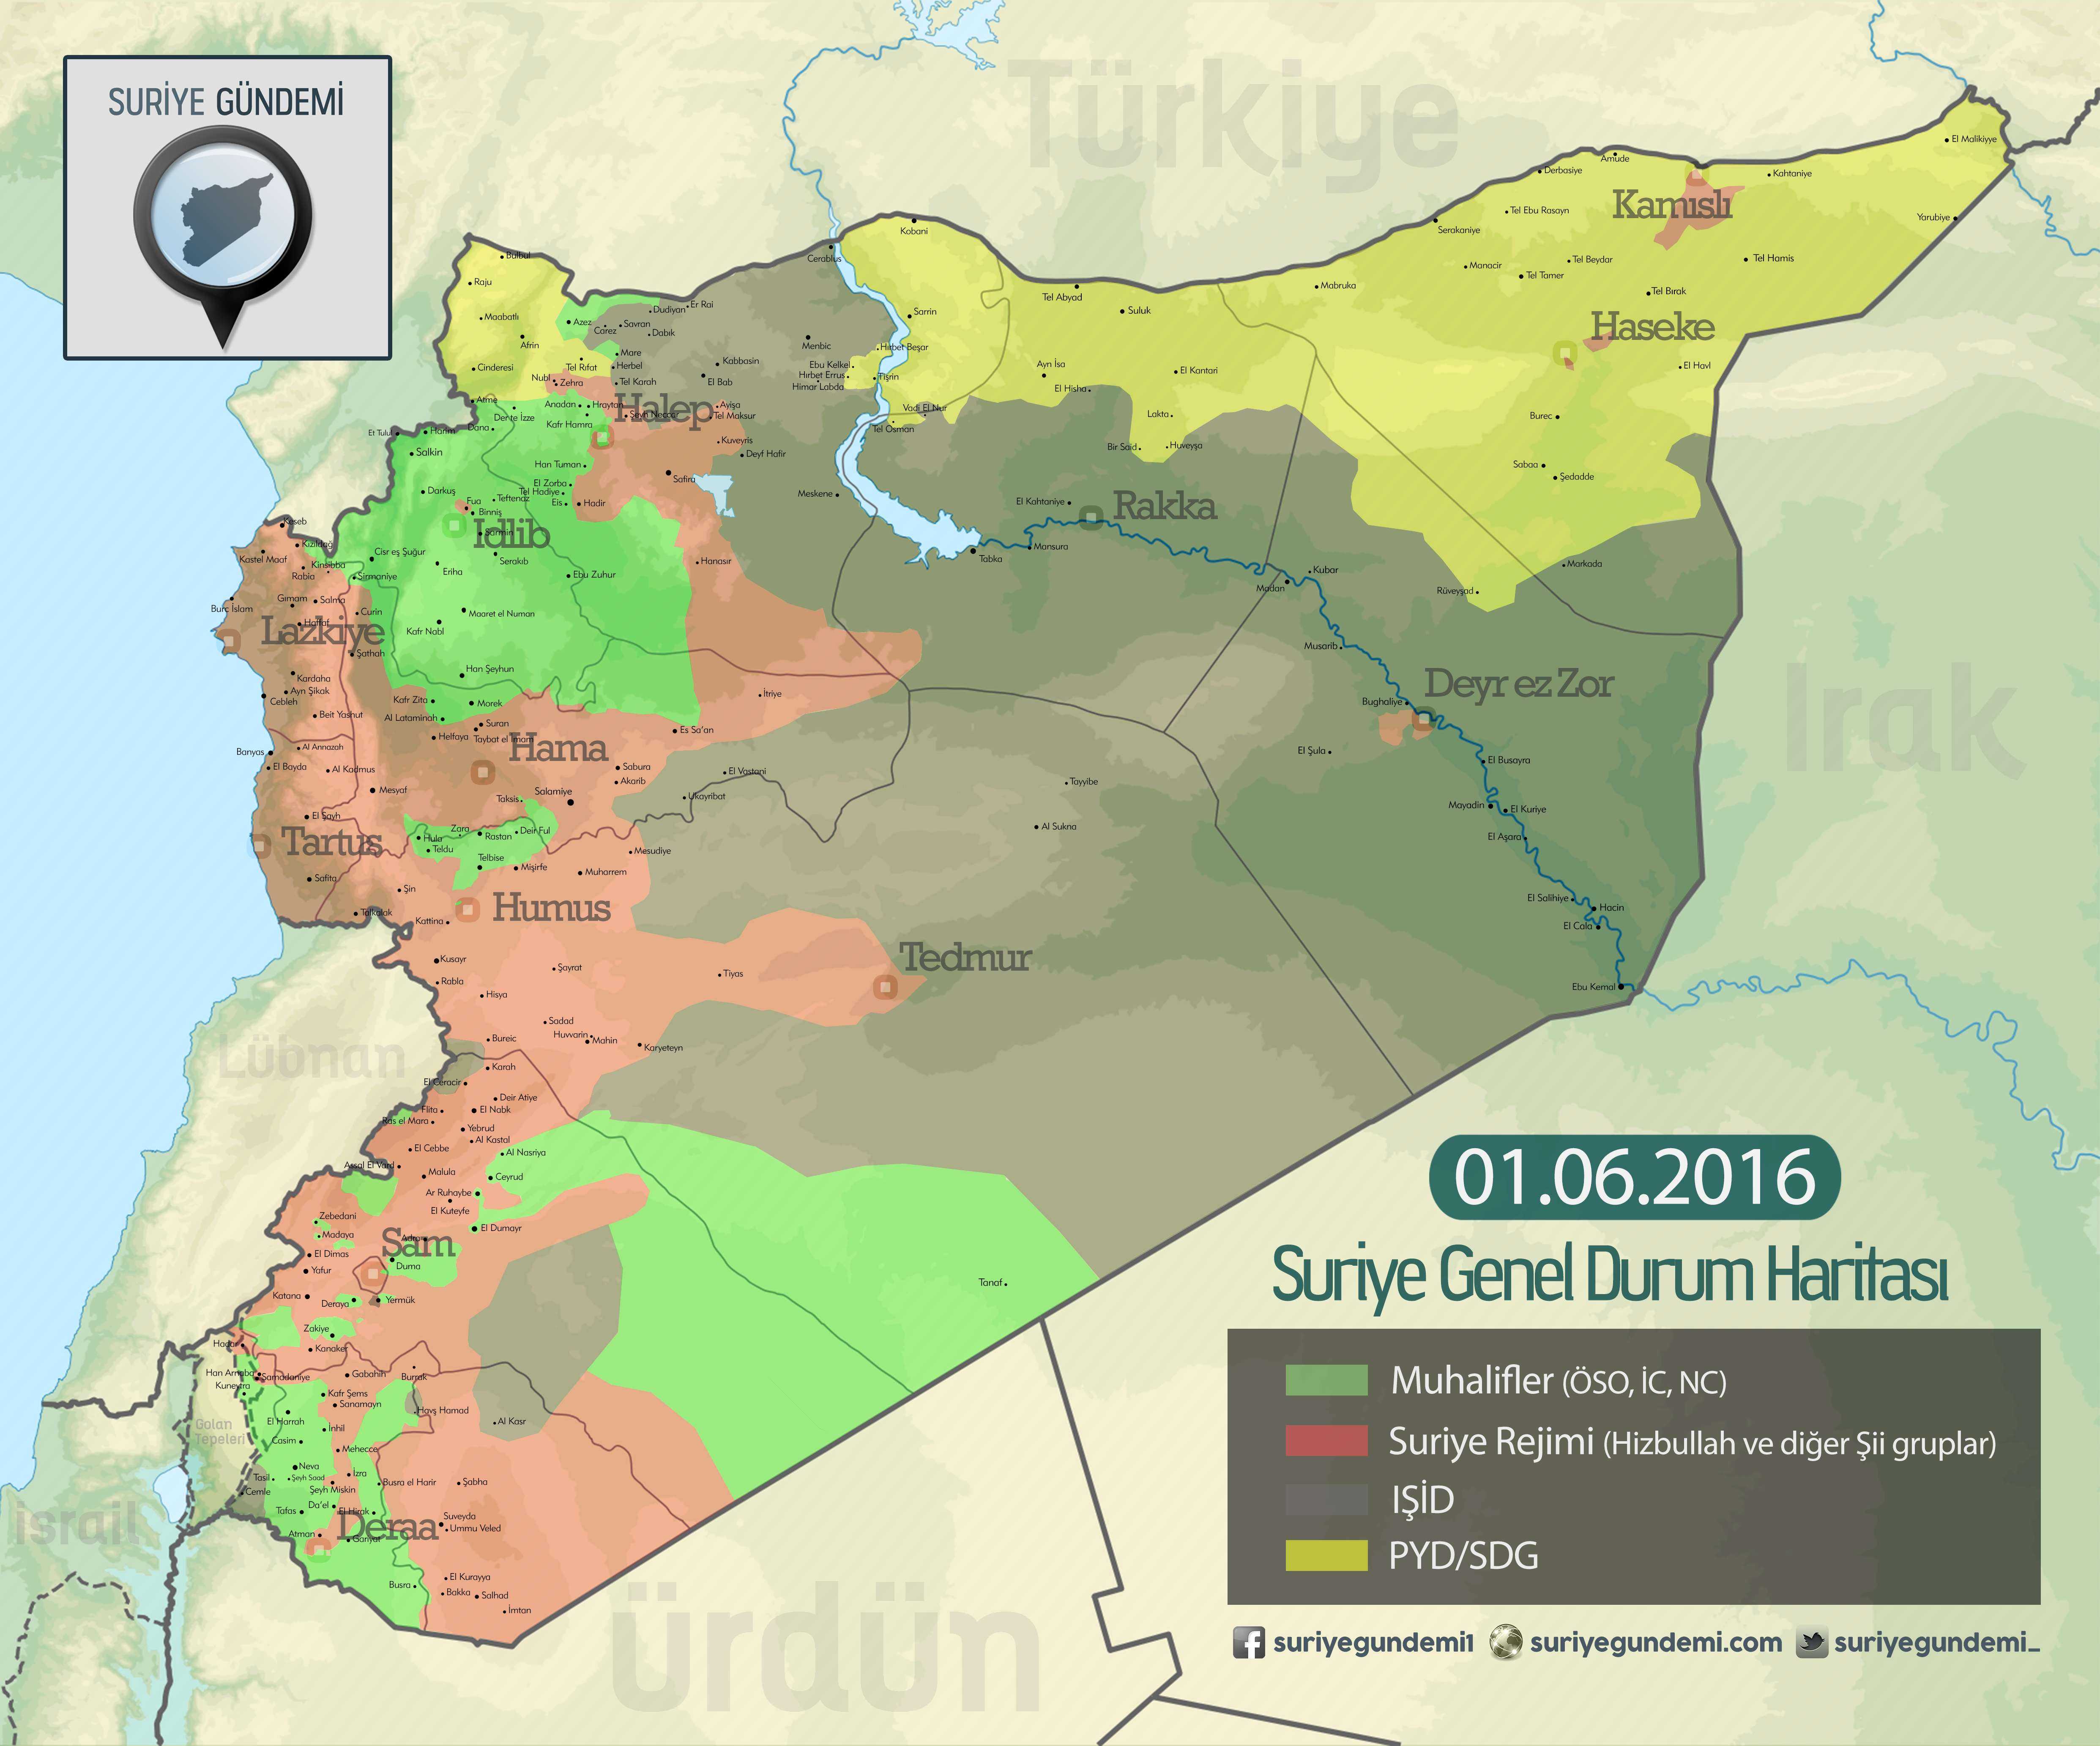 Suriye'deki Son Durum Haritası 01.06.2016 (Harita: suriyegundemi.com)